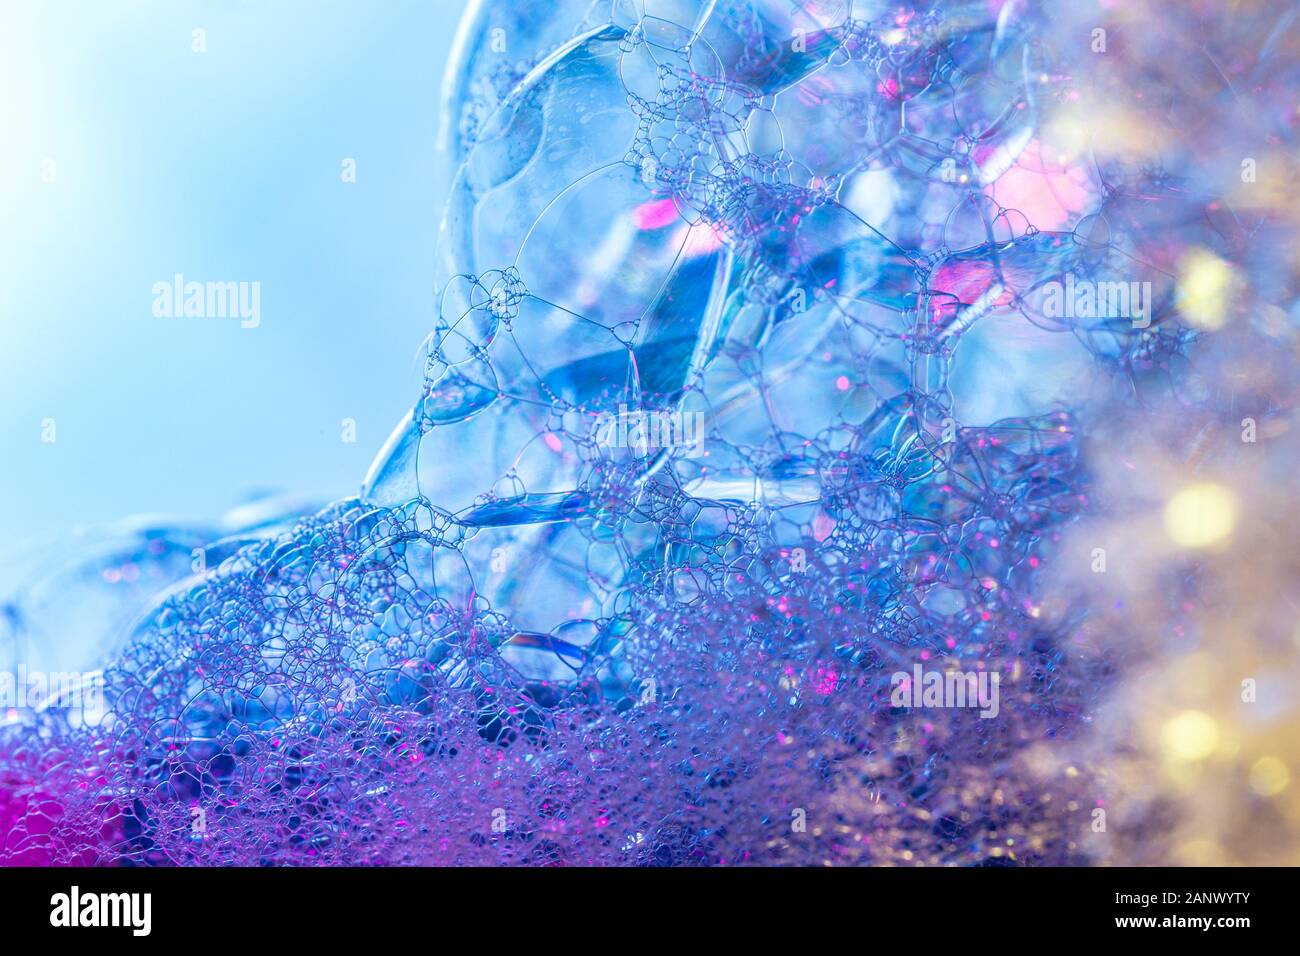 Kreative Zusammenfassung Hintergrund der Kette von Bläschen Struktur in Blau - magenta Töne Stockfoto